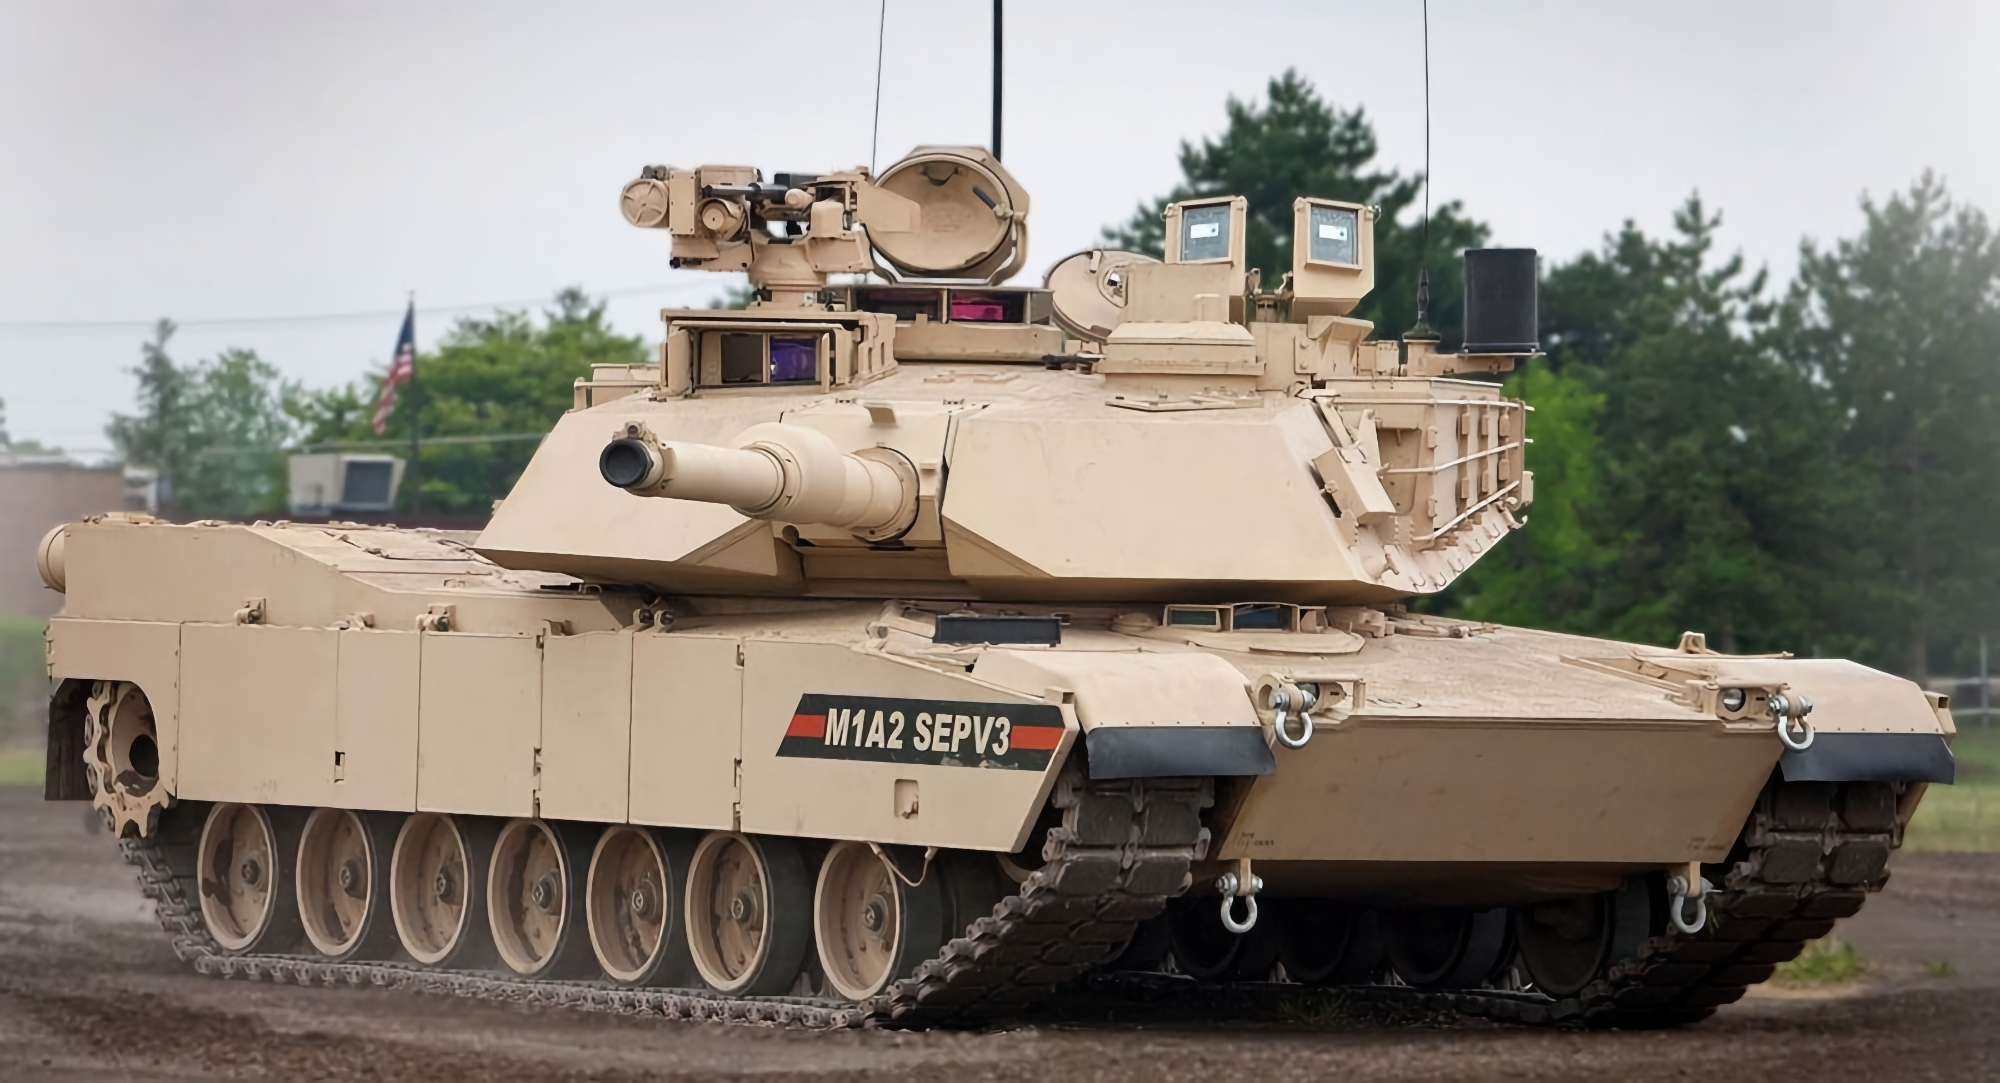 General Dynamics otrzymał zlecenie na produkcję 250 nowoczesnych czołgów Abrams M1A2 SEPv3 dla Polski, wartość kontraktu to 1,148 mld USD